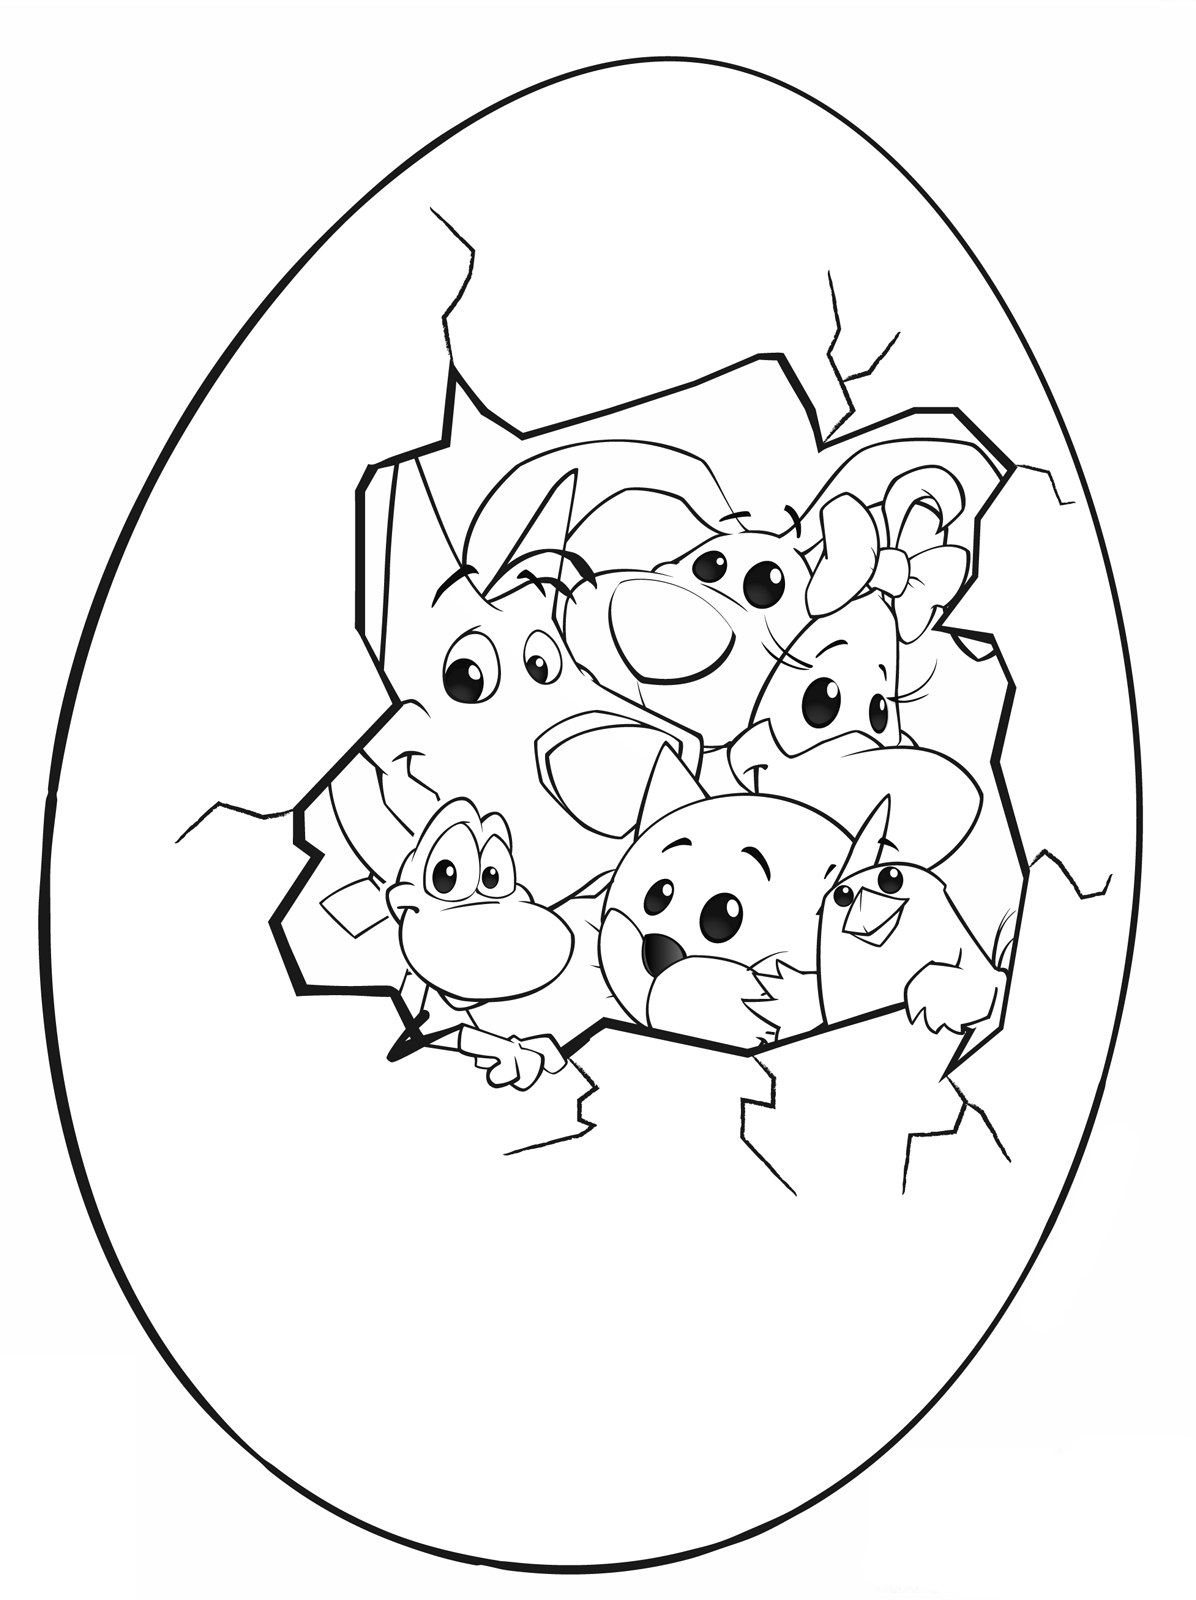 Cuccioli - Cilindro Olly Portatile Senzanome Diva e Pio insieme dentro un uovo